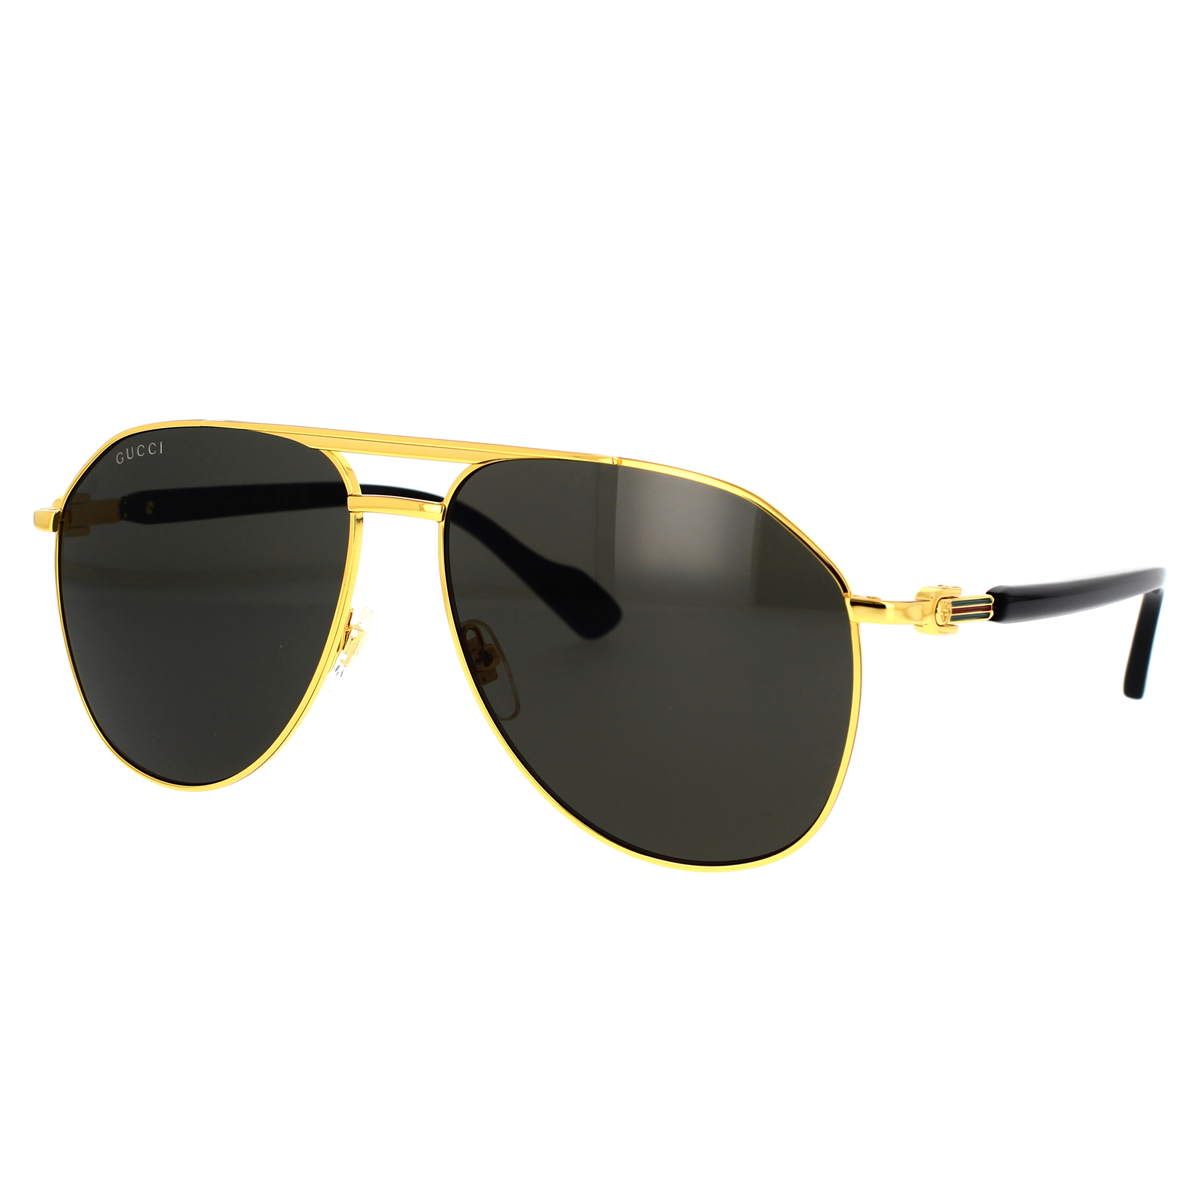 Gucci GG1220S-001 59mm New Sunglasses